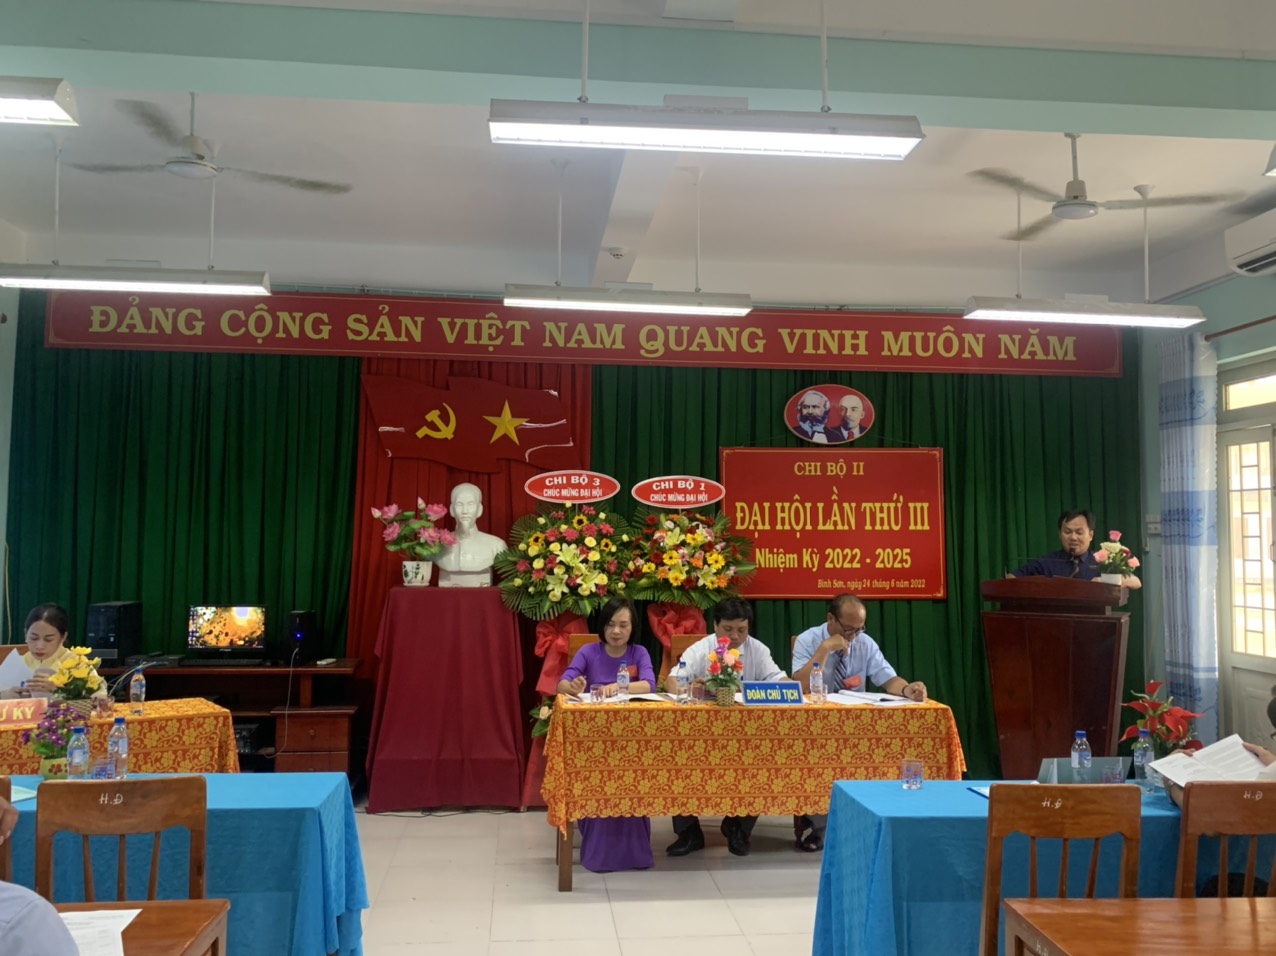 Đồng chí Phạm Thạch Sinh - Bí thư Đảng bộ - phát biểu chỉ đạo Đại hội